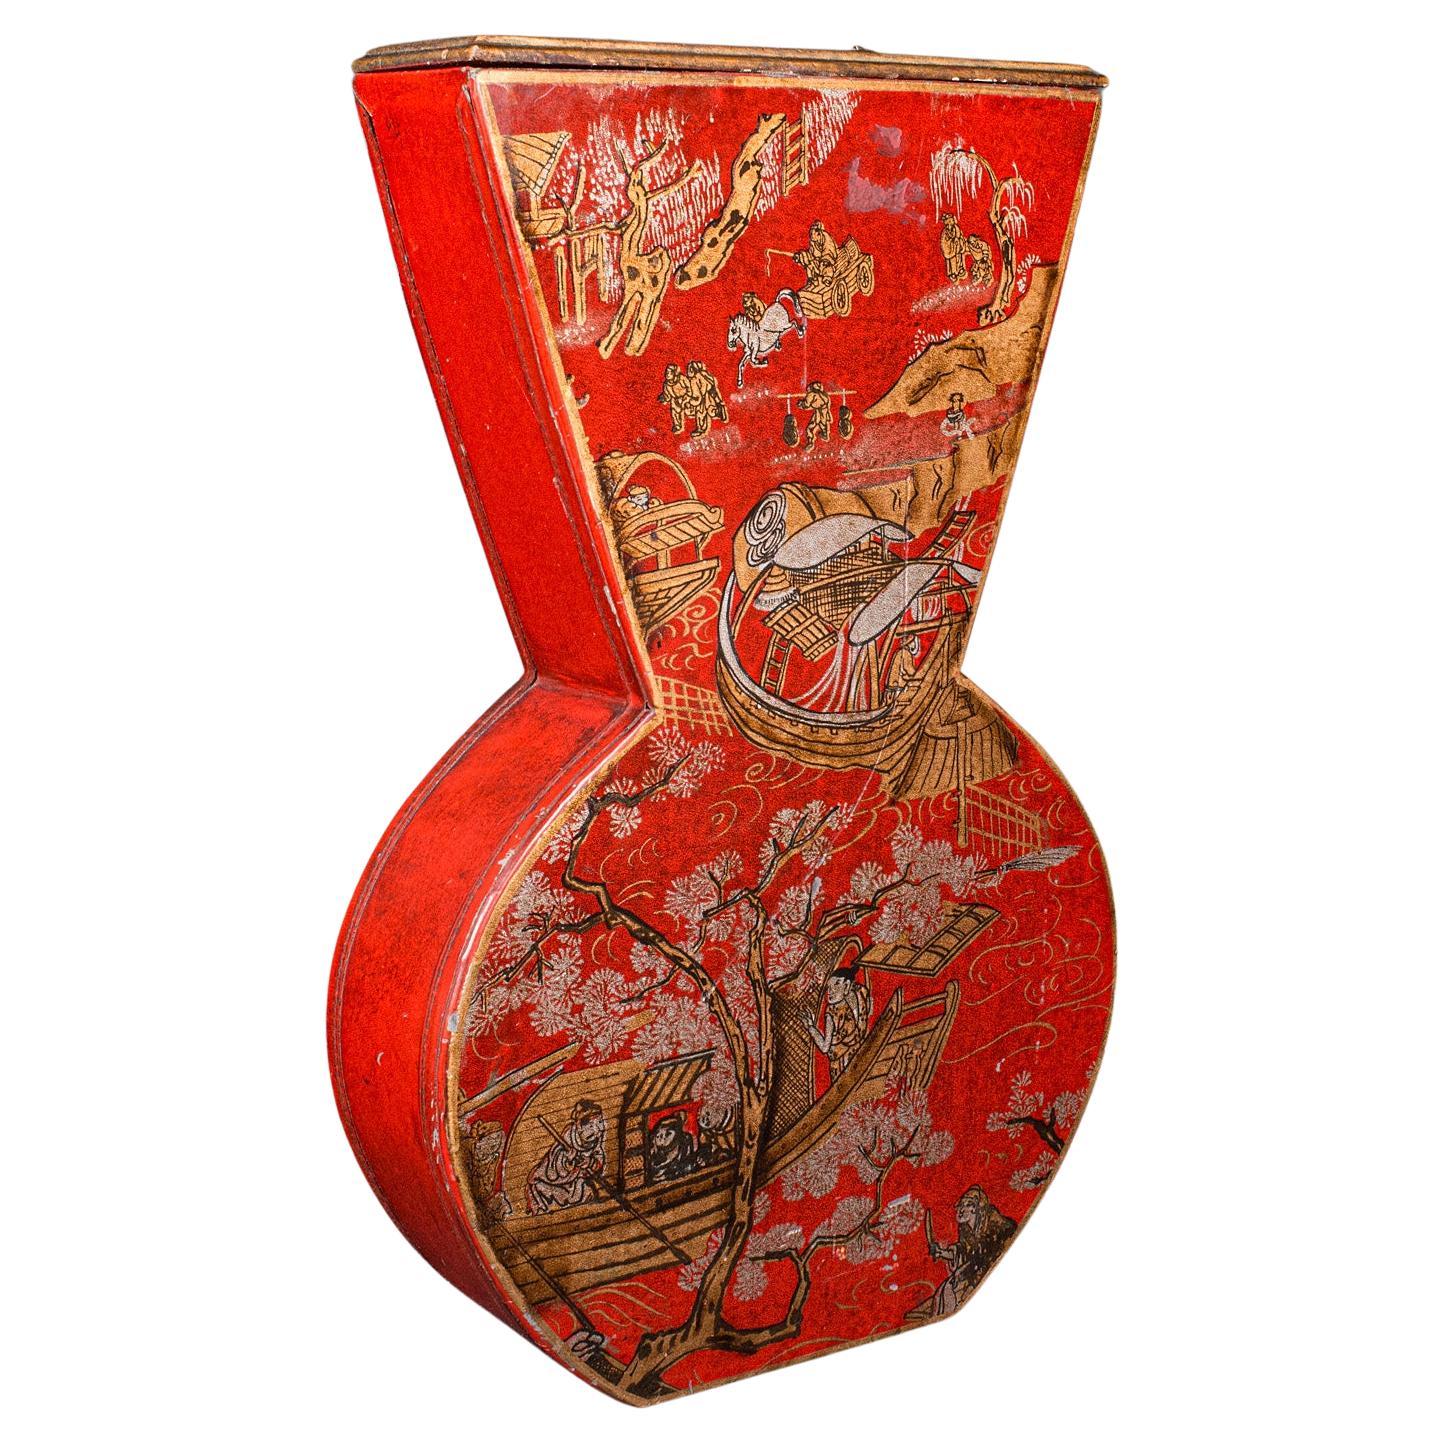 Vintage-Blumenvase aus getrocknetem Holz, chinesisch, handbemalt, dekorativ, Chinoiserie, ca. 1970